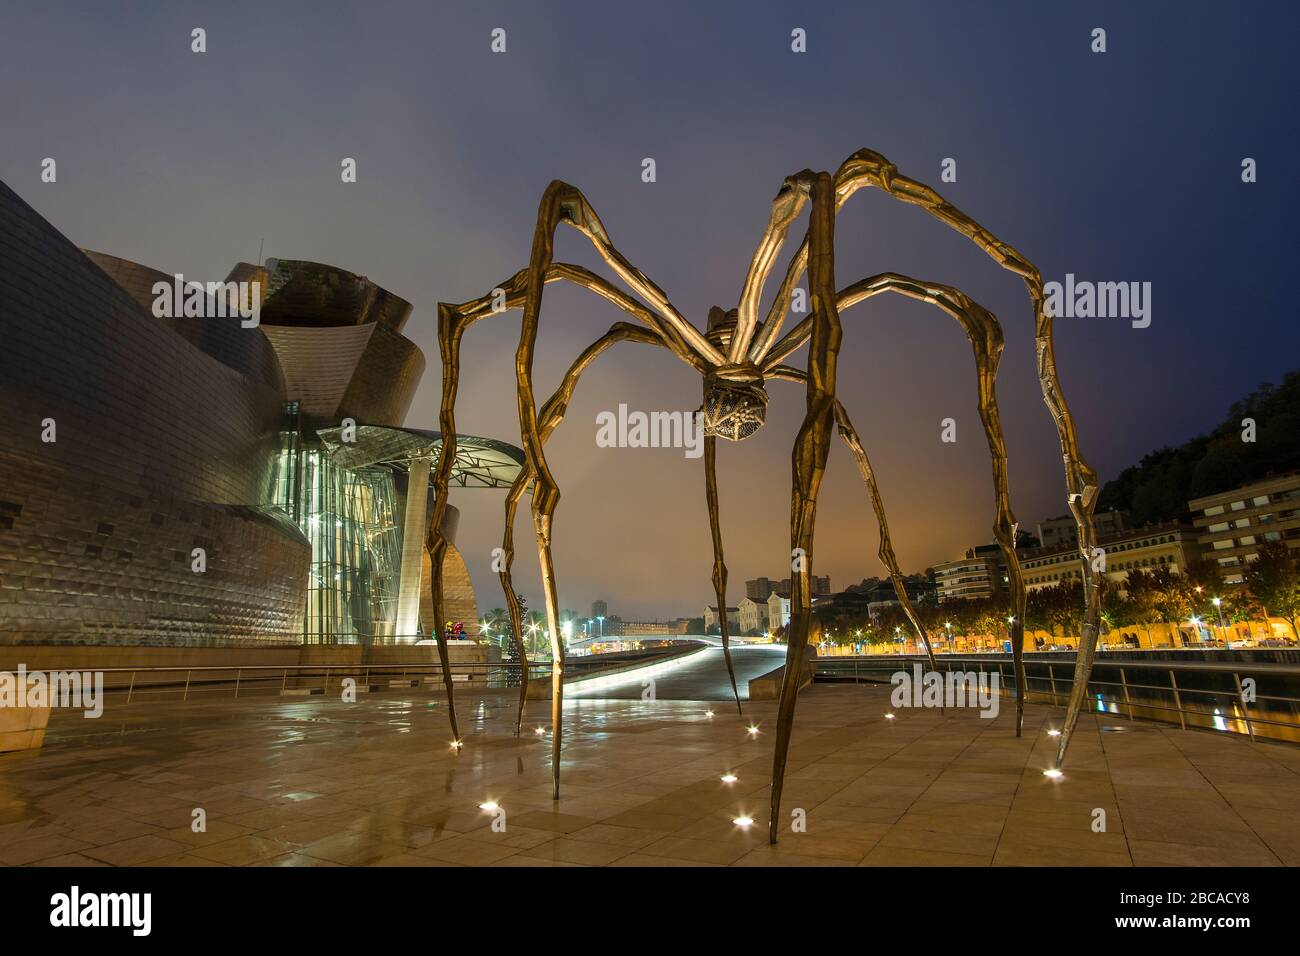 Spagna, Bilbao, Museo Guggenheim, scultura, ragno, maman Foto Stock